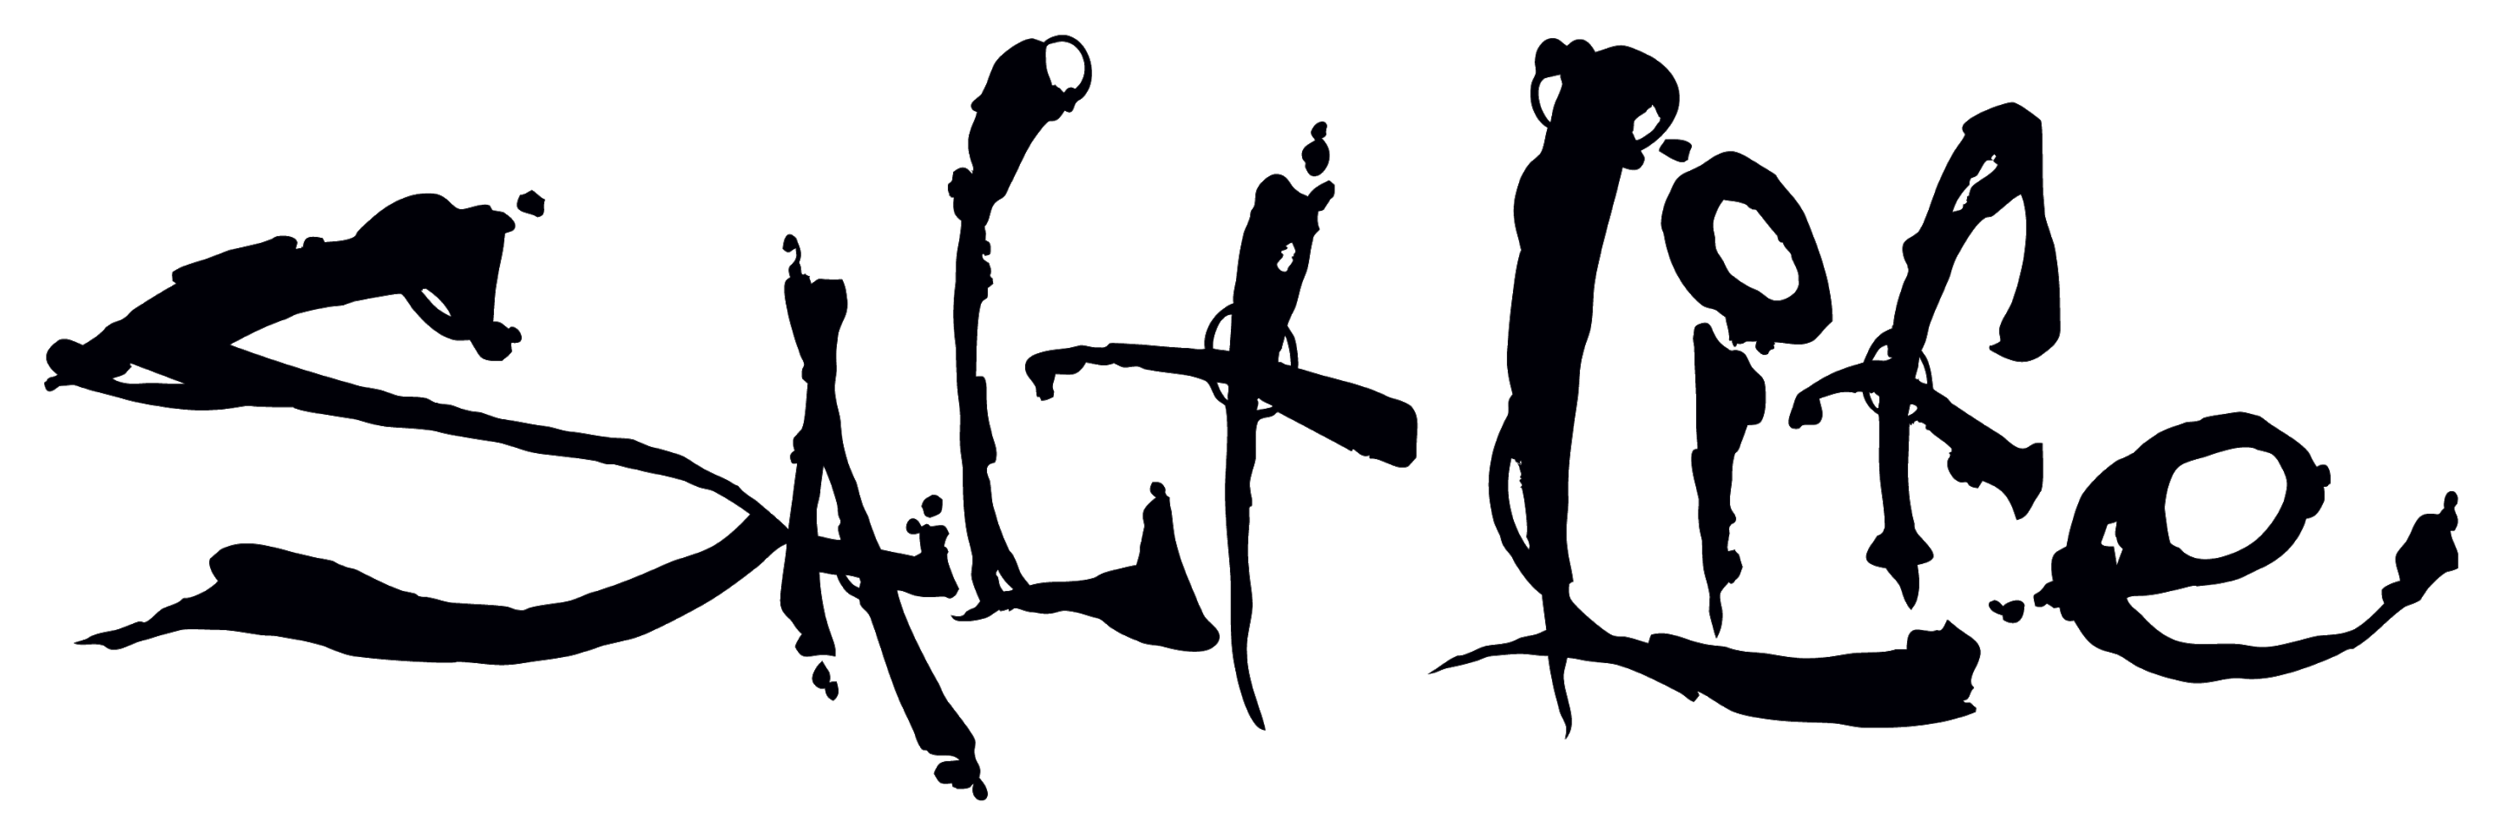 Salt Life Logo.png